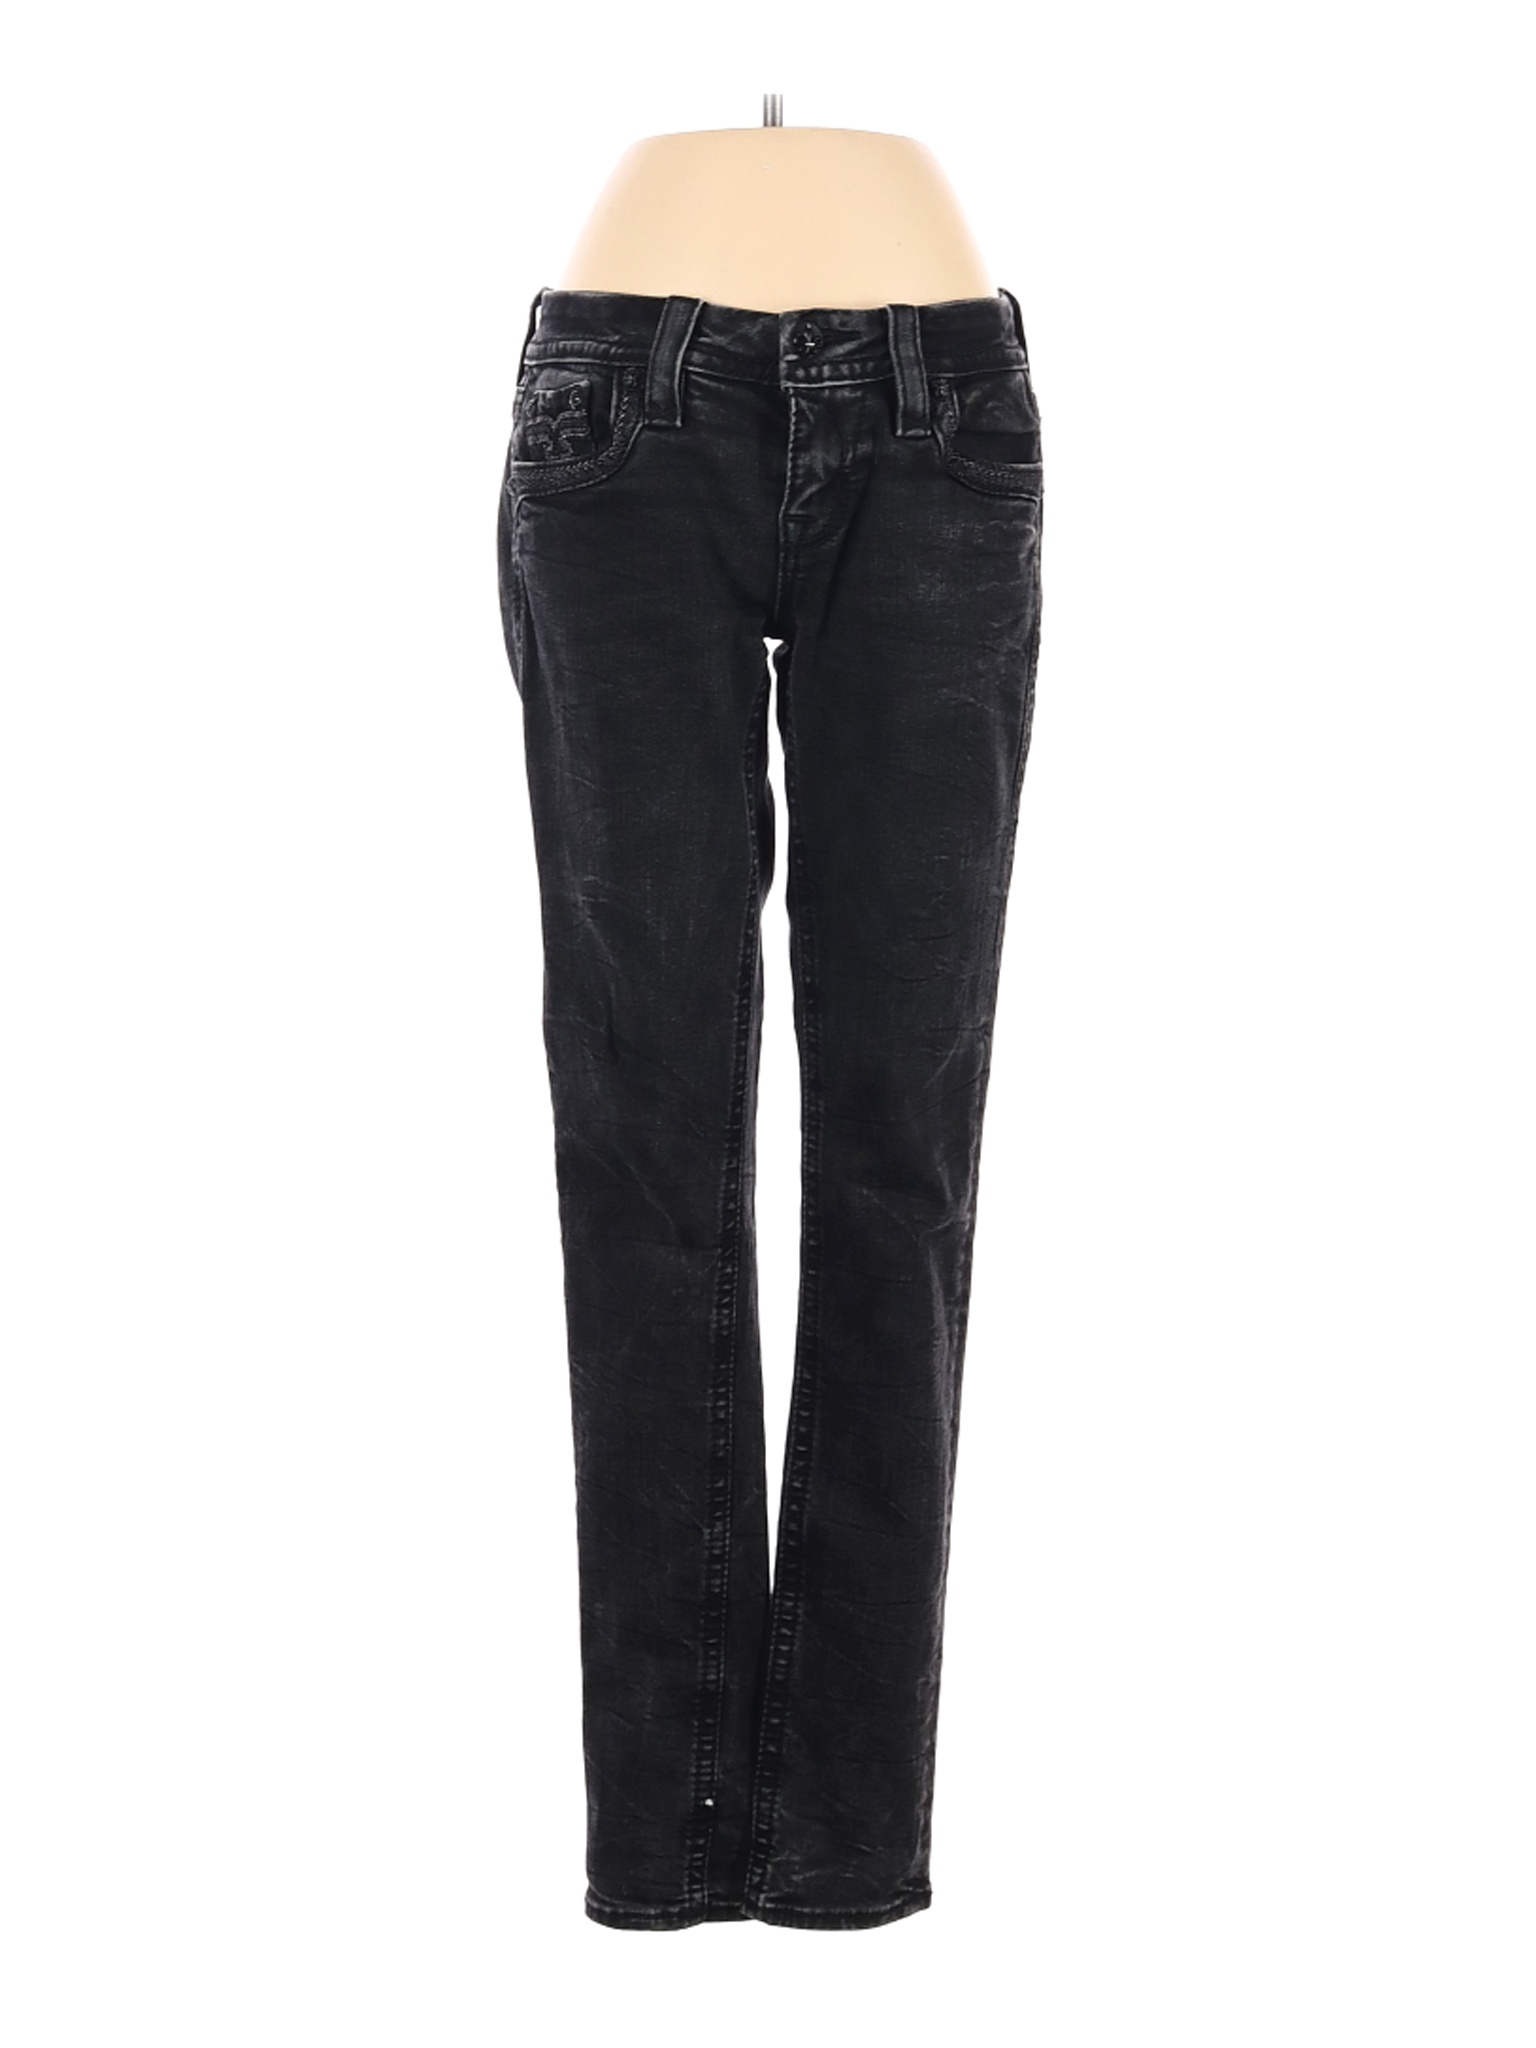 Rock Revival Women Black Jeans 10 | eBay